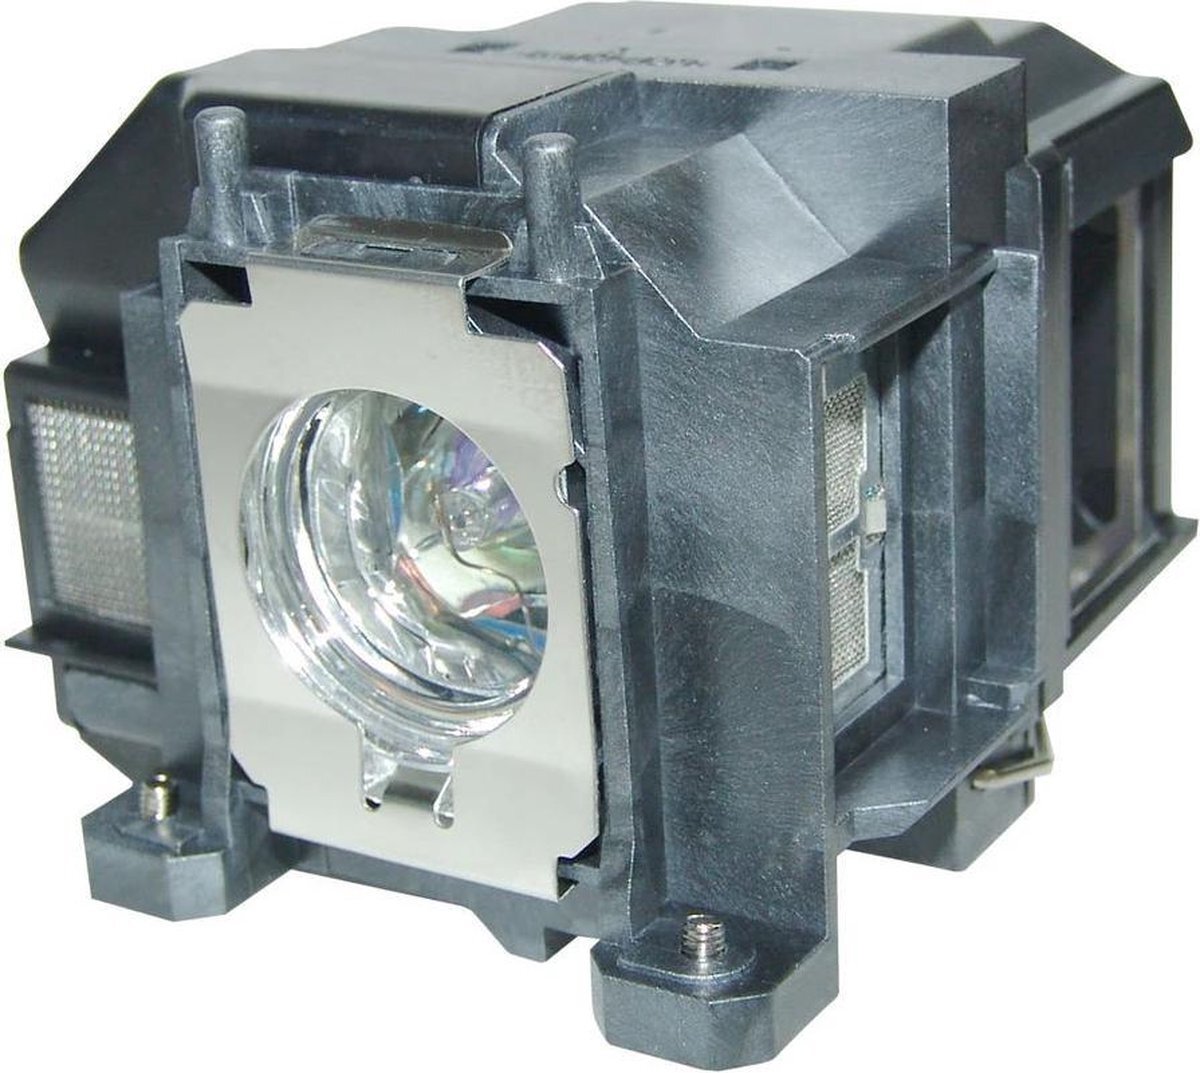 QualityLamp EPSON EX5210 beamerlamp LP67 / V13H010L67, bevat originele P-VIP lamp. Prestaties gelijk aan origineel.